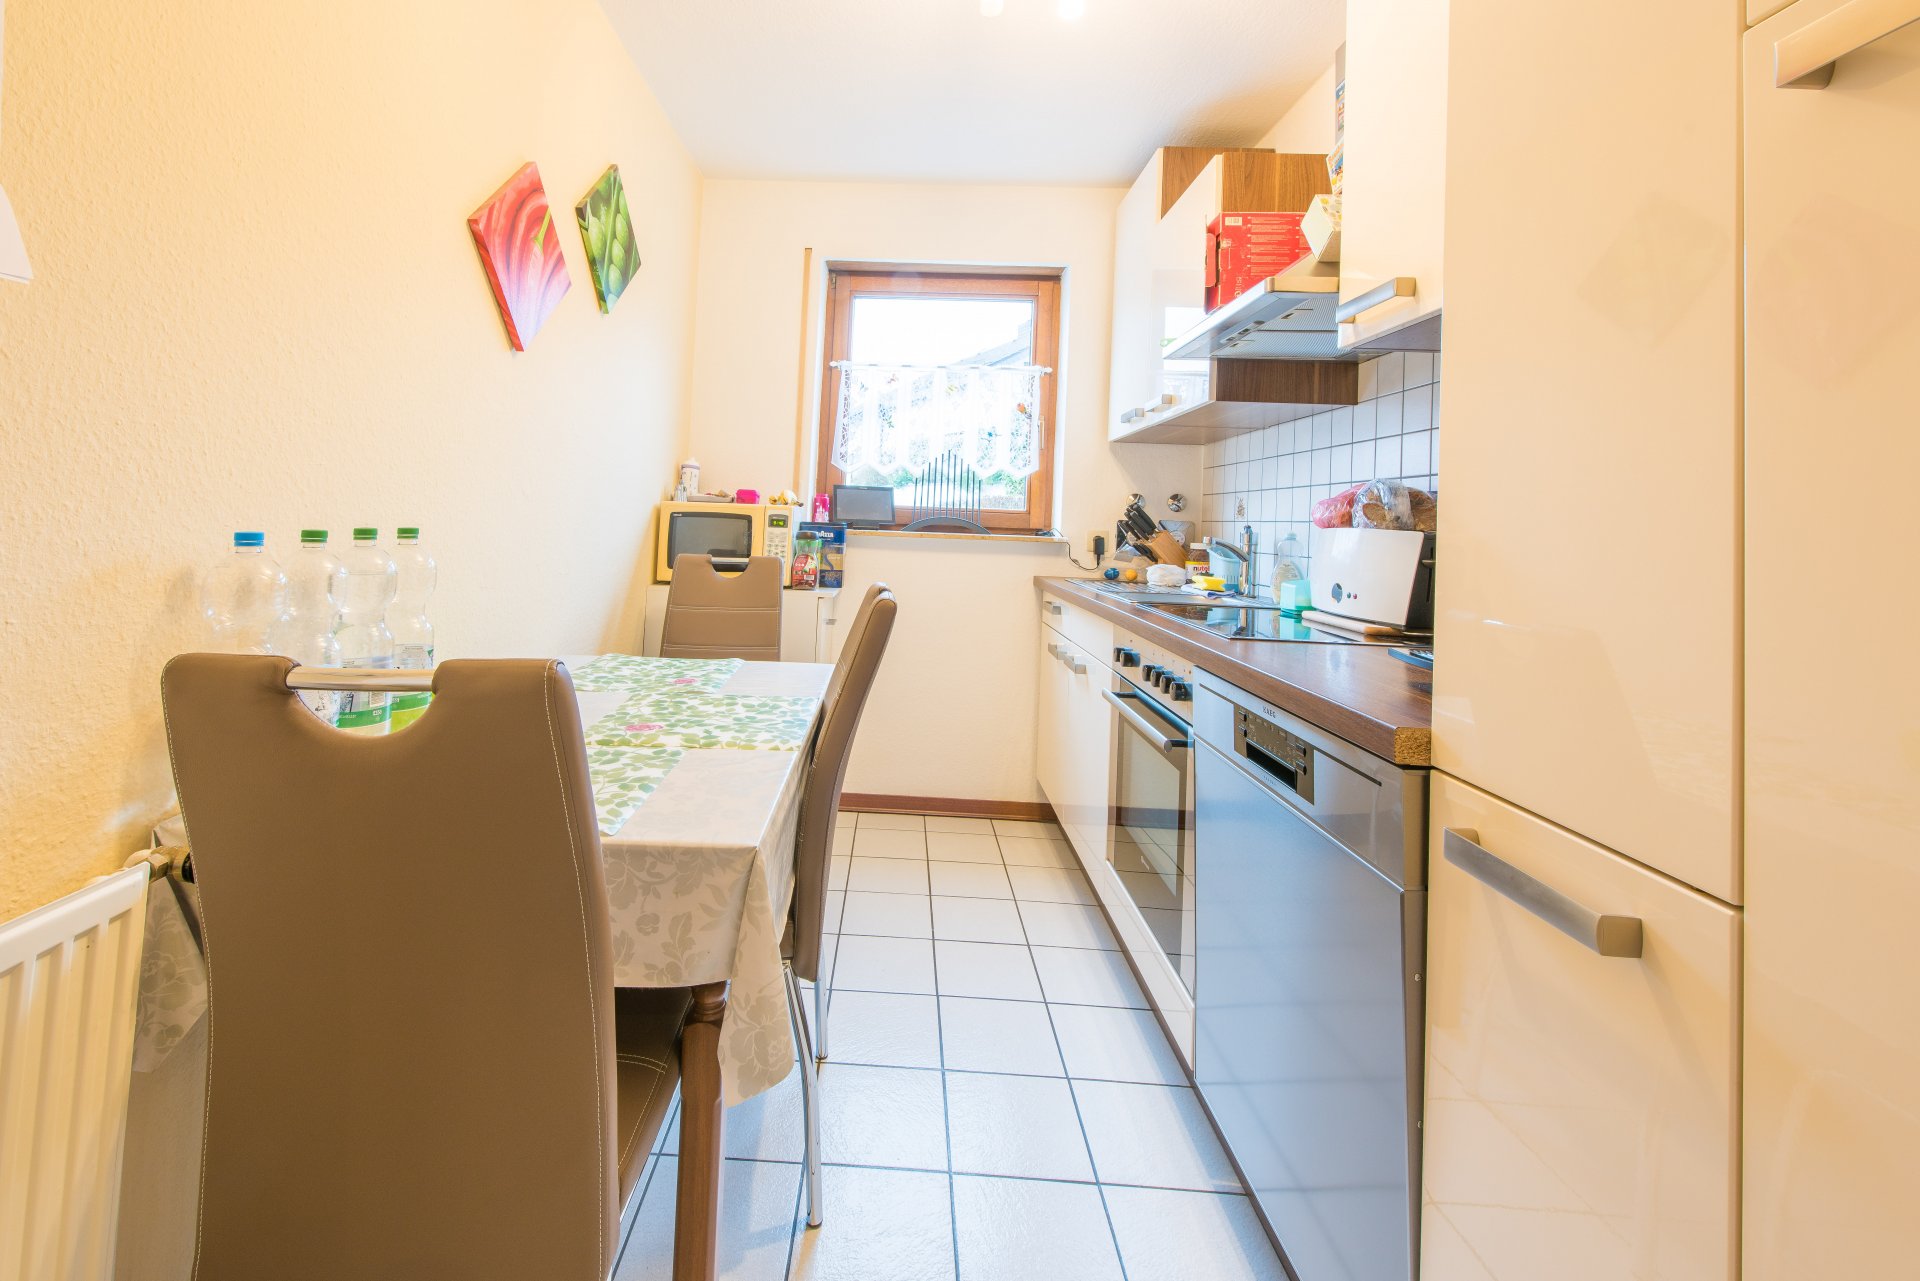 Küchenraum separat, dann müssen Sie Ihren Mann nicht beim arbeiten zusehen - Oliver Reifferscheid - Immobilienmakler Darmstadt